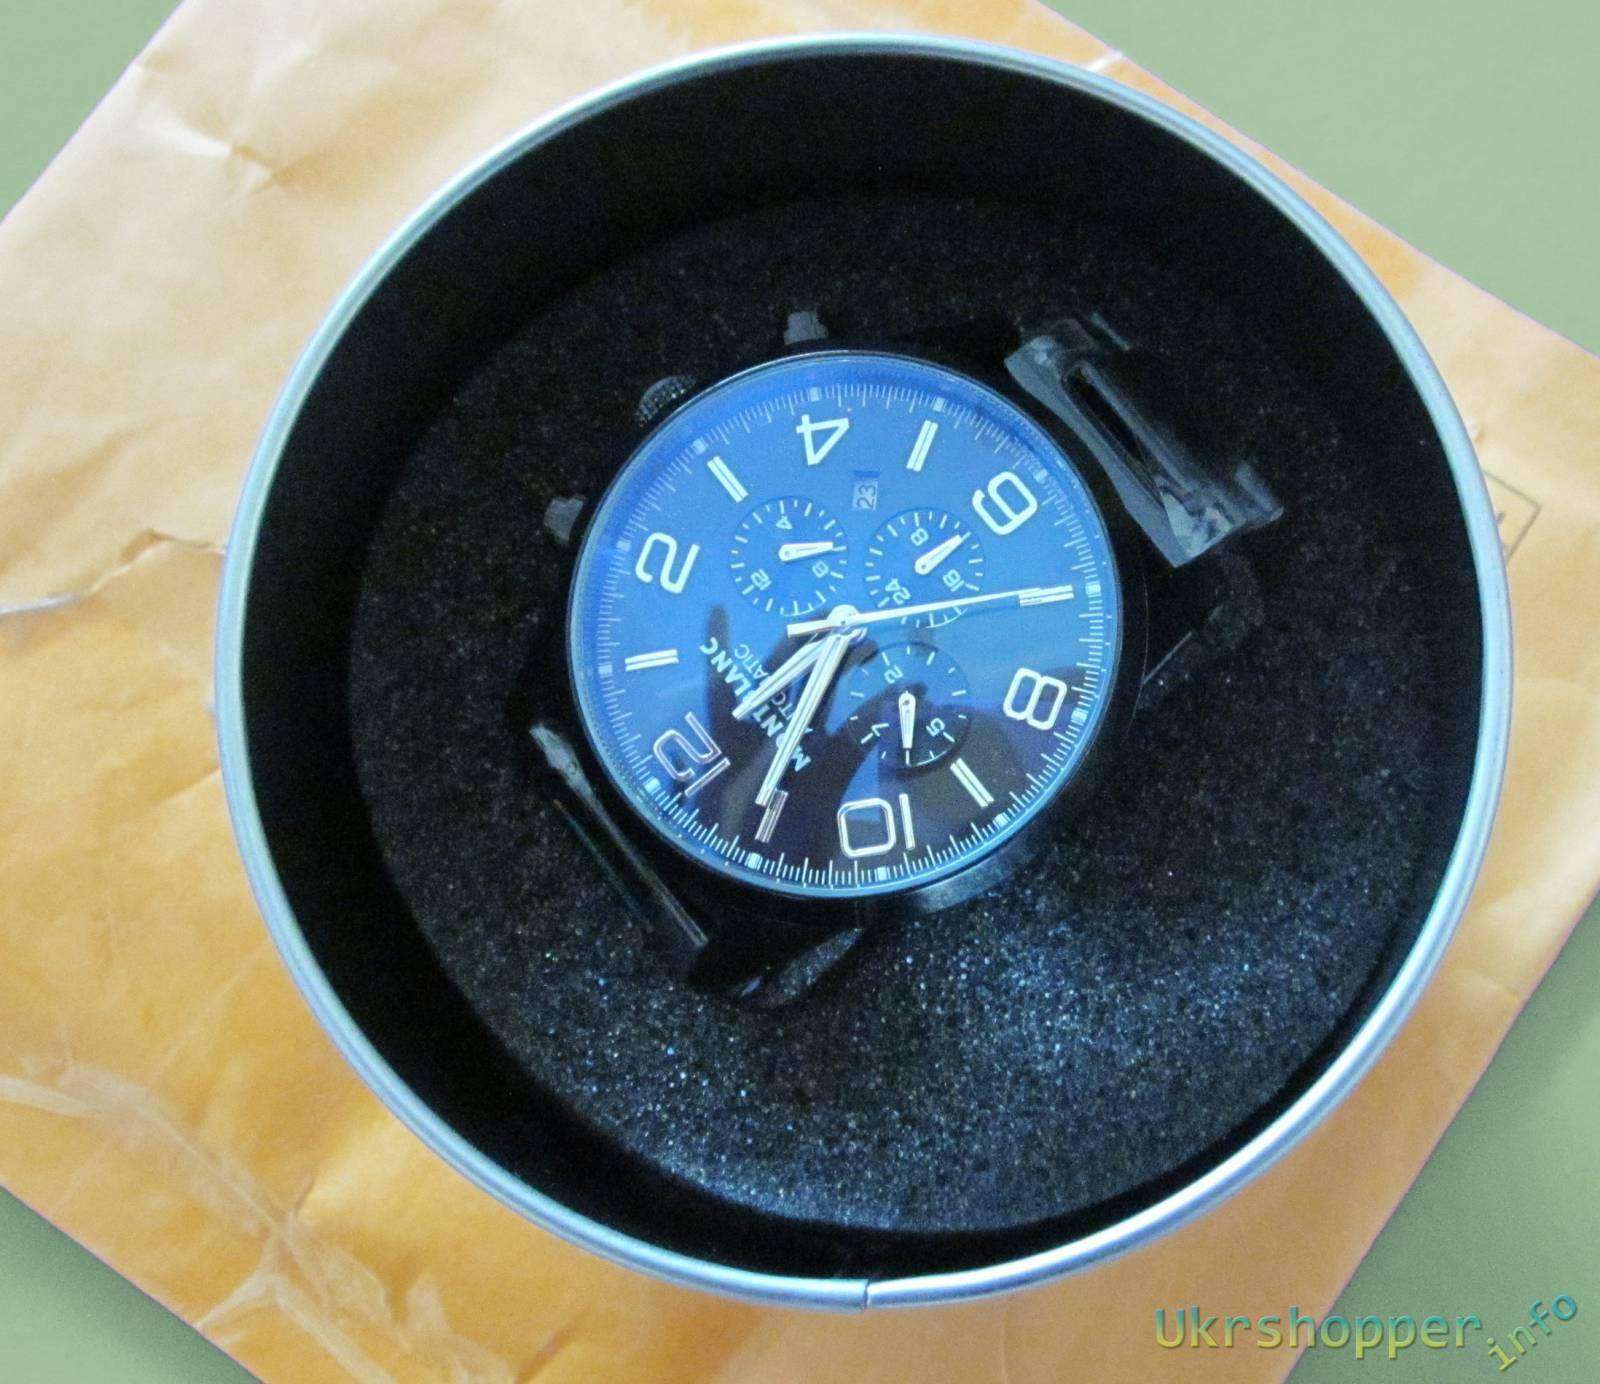 Другие - Украина: Обзор дорогих подарочных механических часов хронографа реплика MONTBLANC